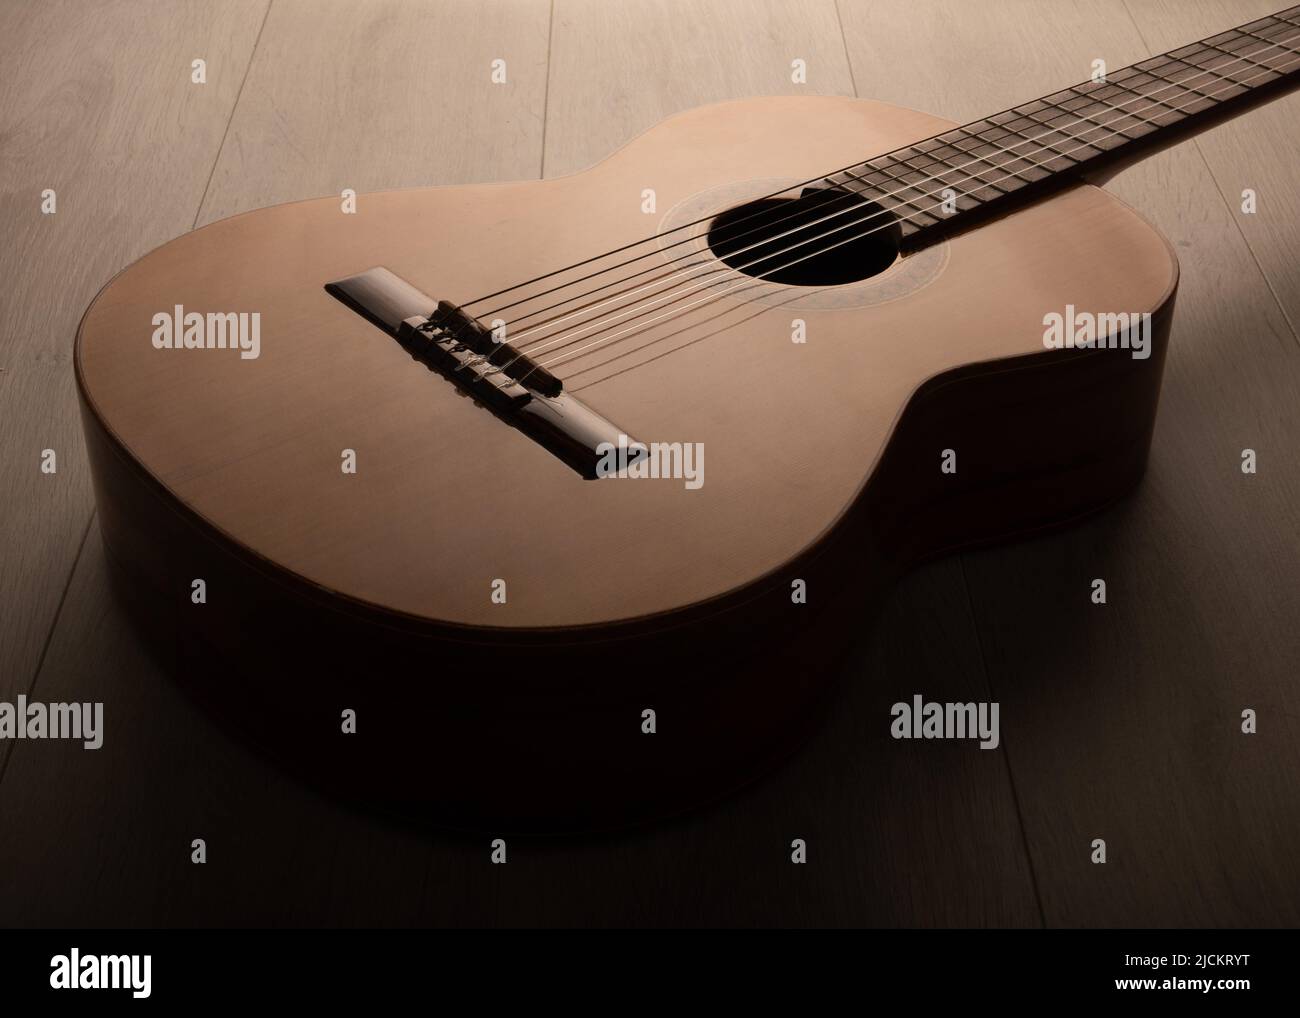 Klassischer Gitarrenkörper dramatisch isoliert aus der Nähe auf einem hellen Hintergrund. Stockfoto